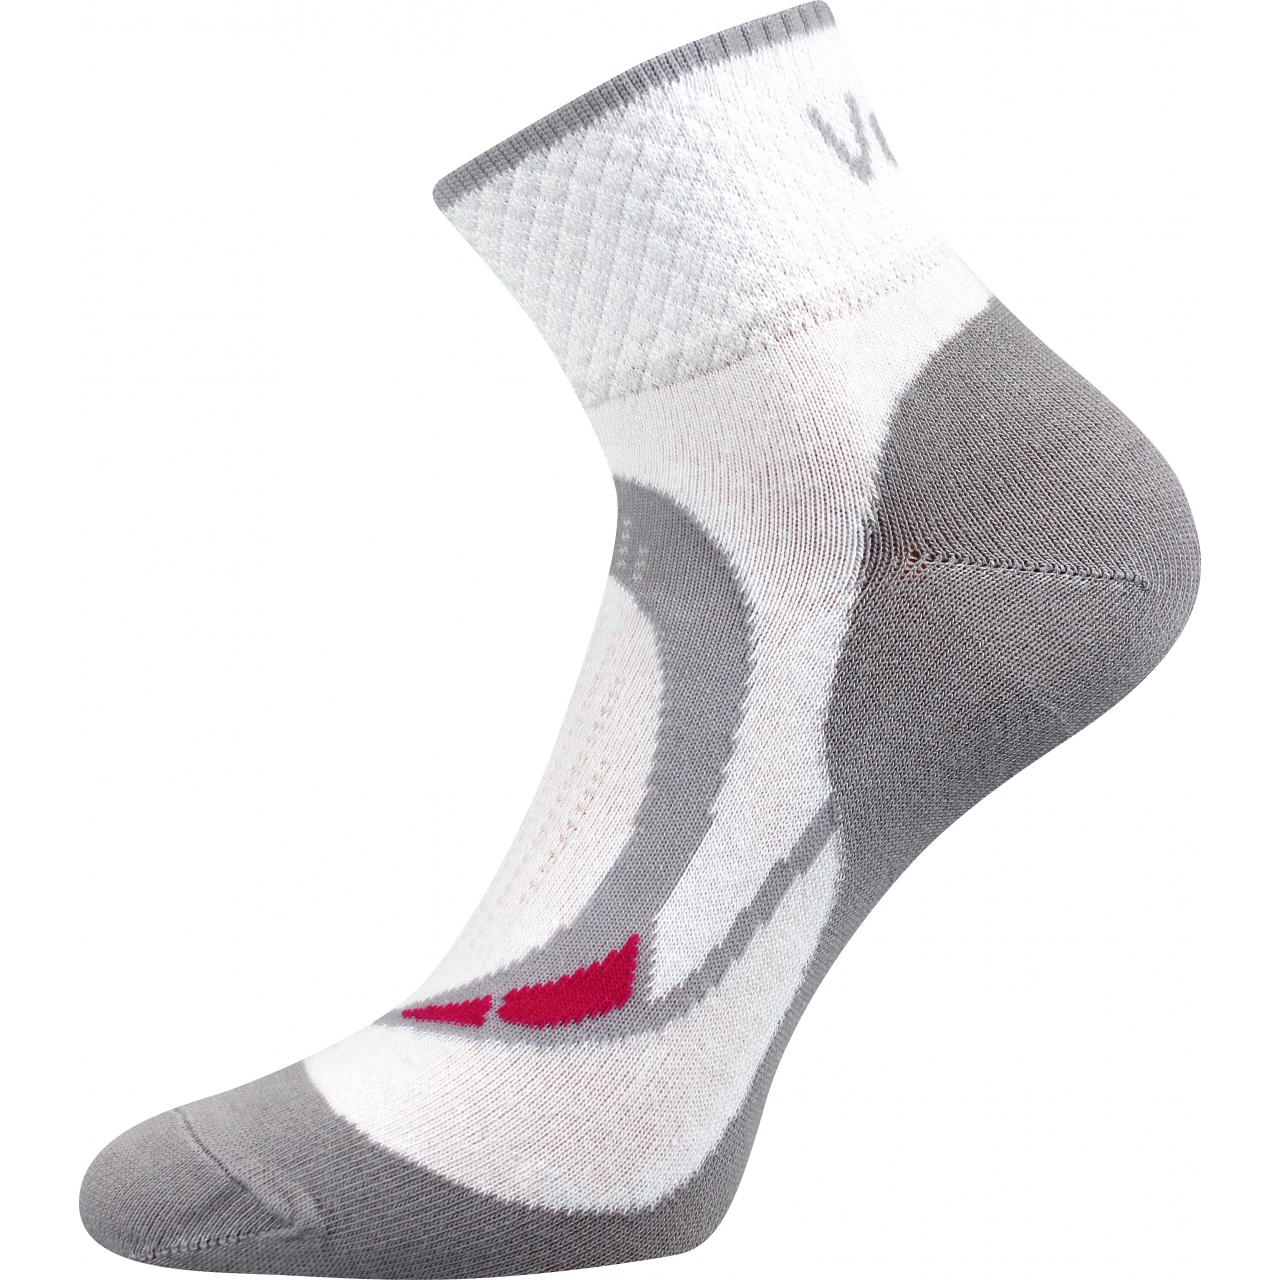 Ponožky dámské sportovní Voxx Lira - bílé, 39-42